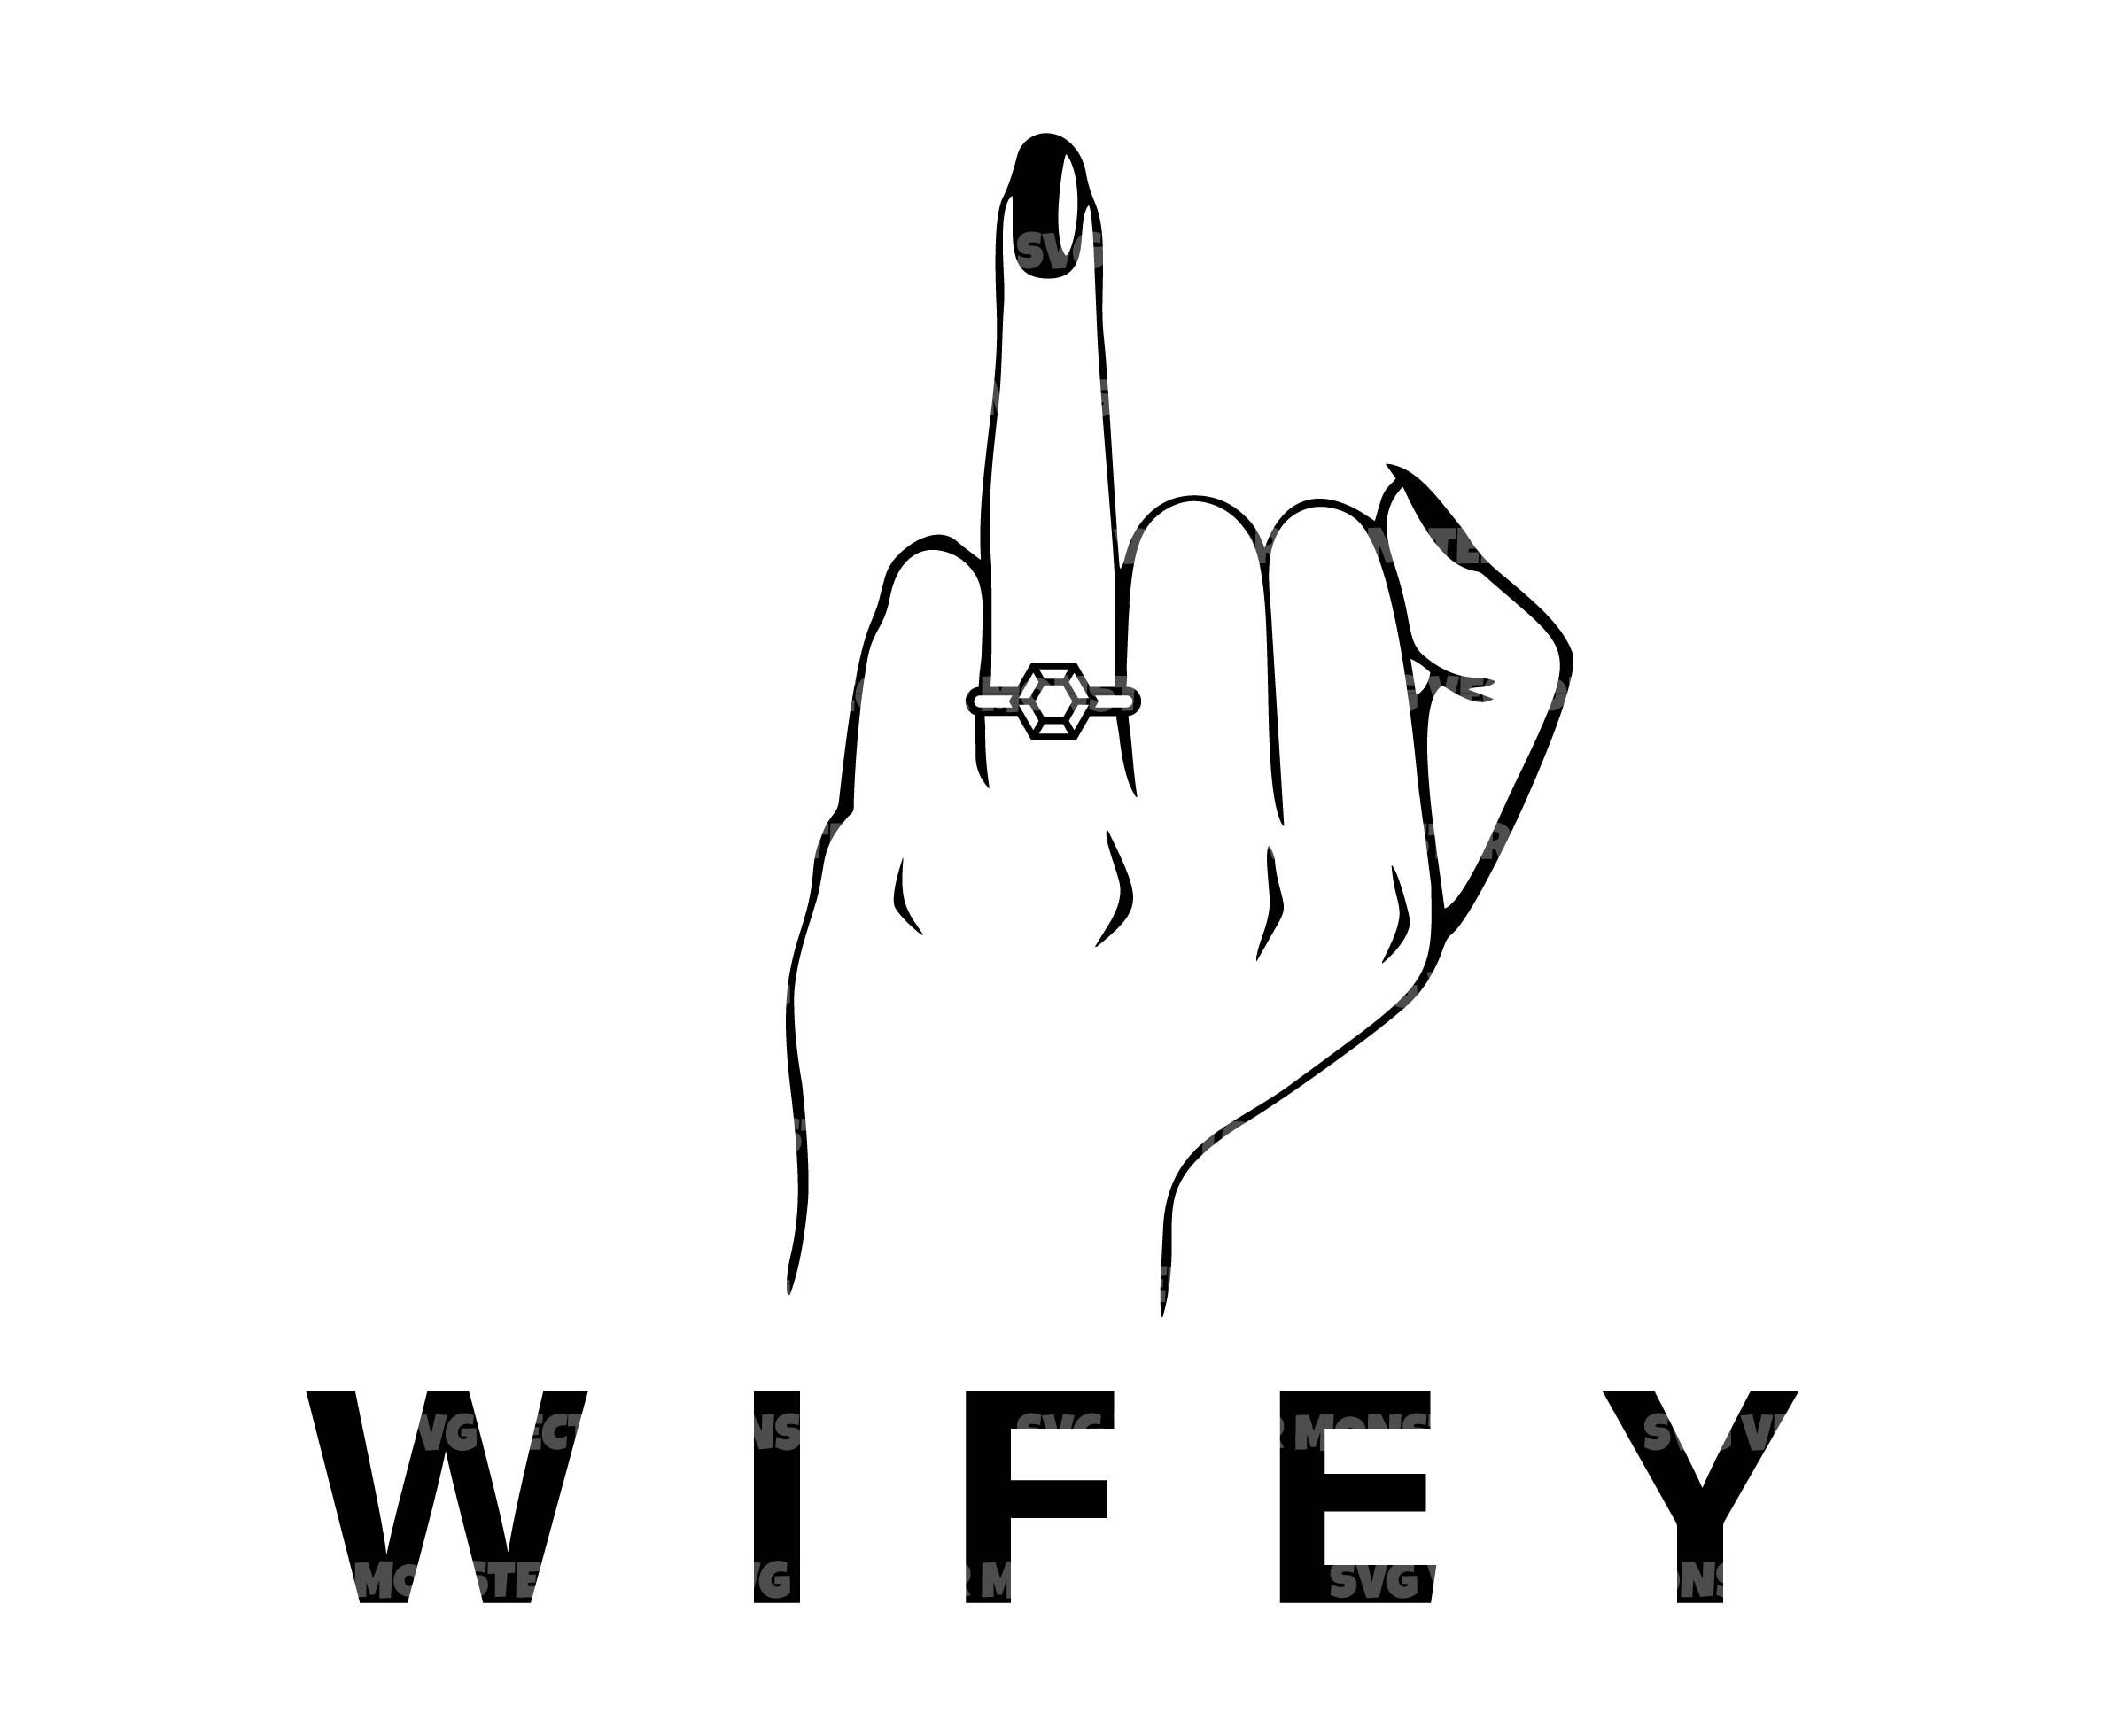 Wife Finger